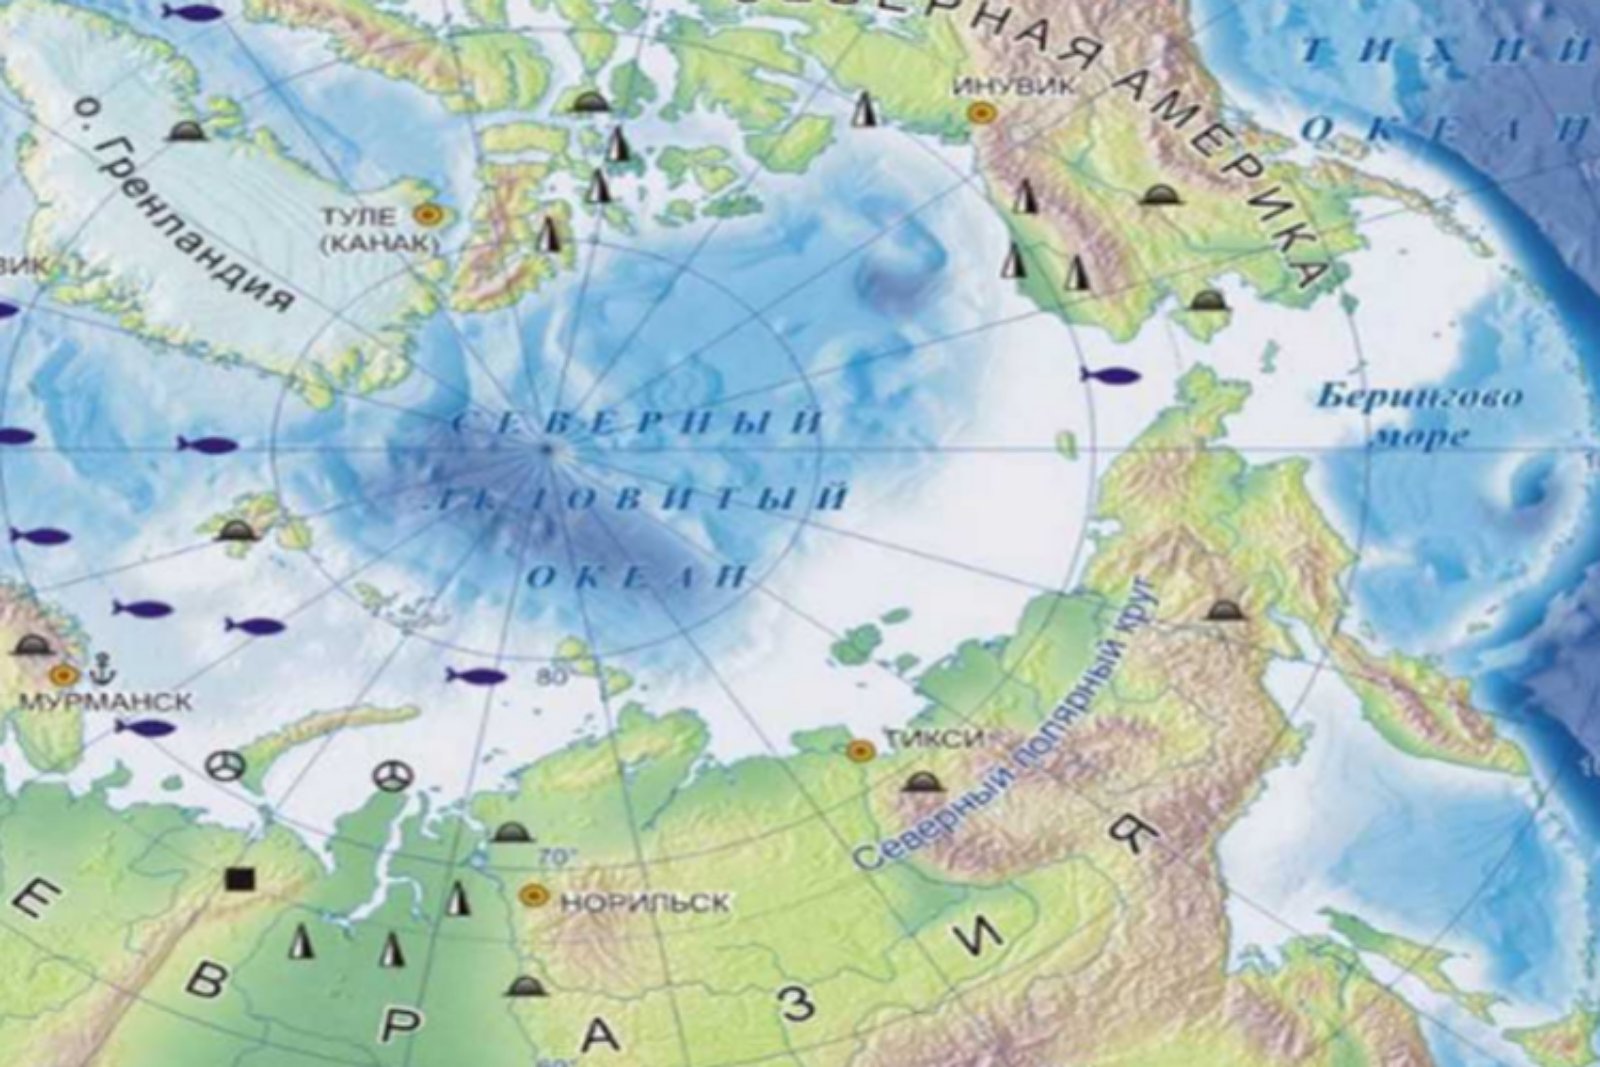 Моря северного ледовитого океана находятся на. Северный Ледовитый океан на карте. Карта Северного Ледовитого океана с морями заливами и проливами. Расположение Северного Ледовитого океана на карте. Карга Северного Ледовитого океана.